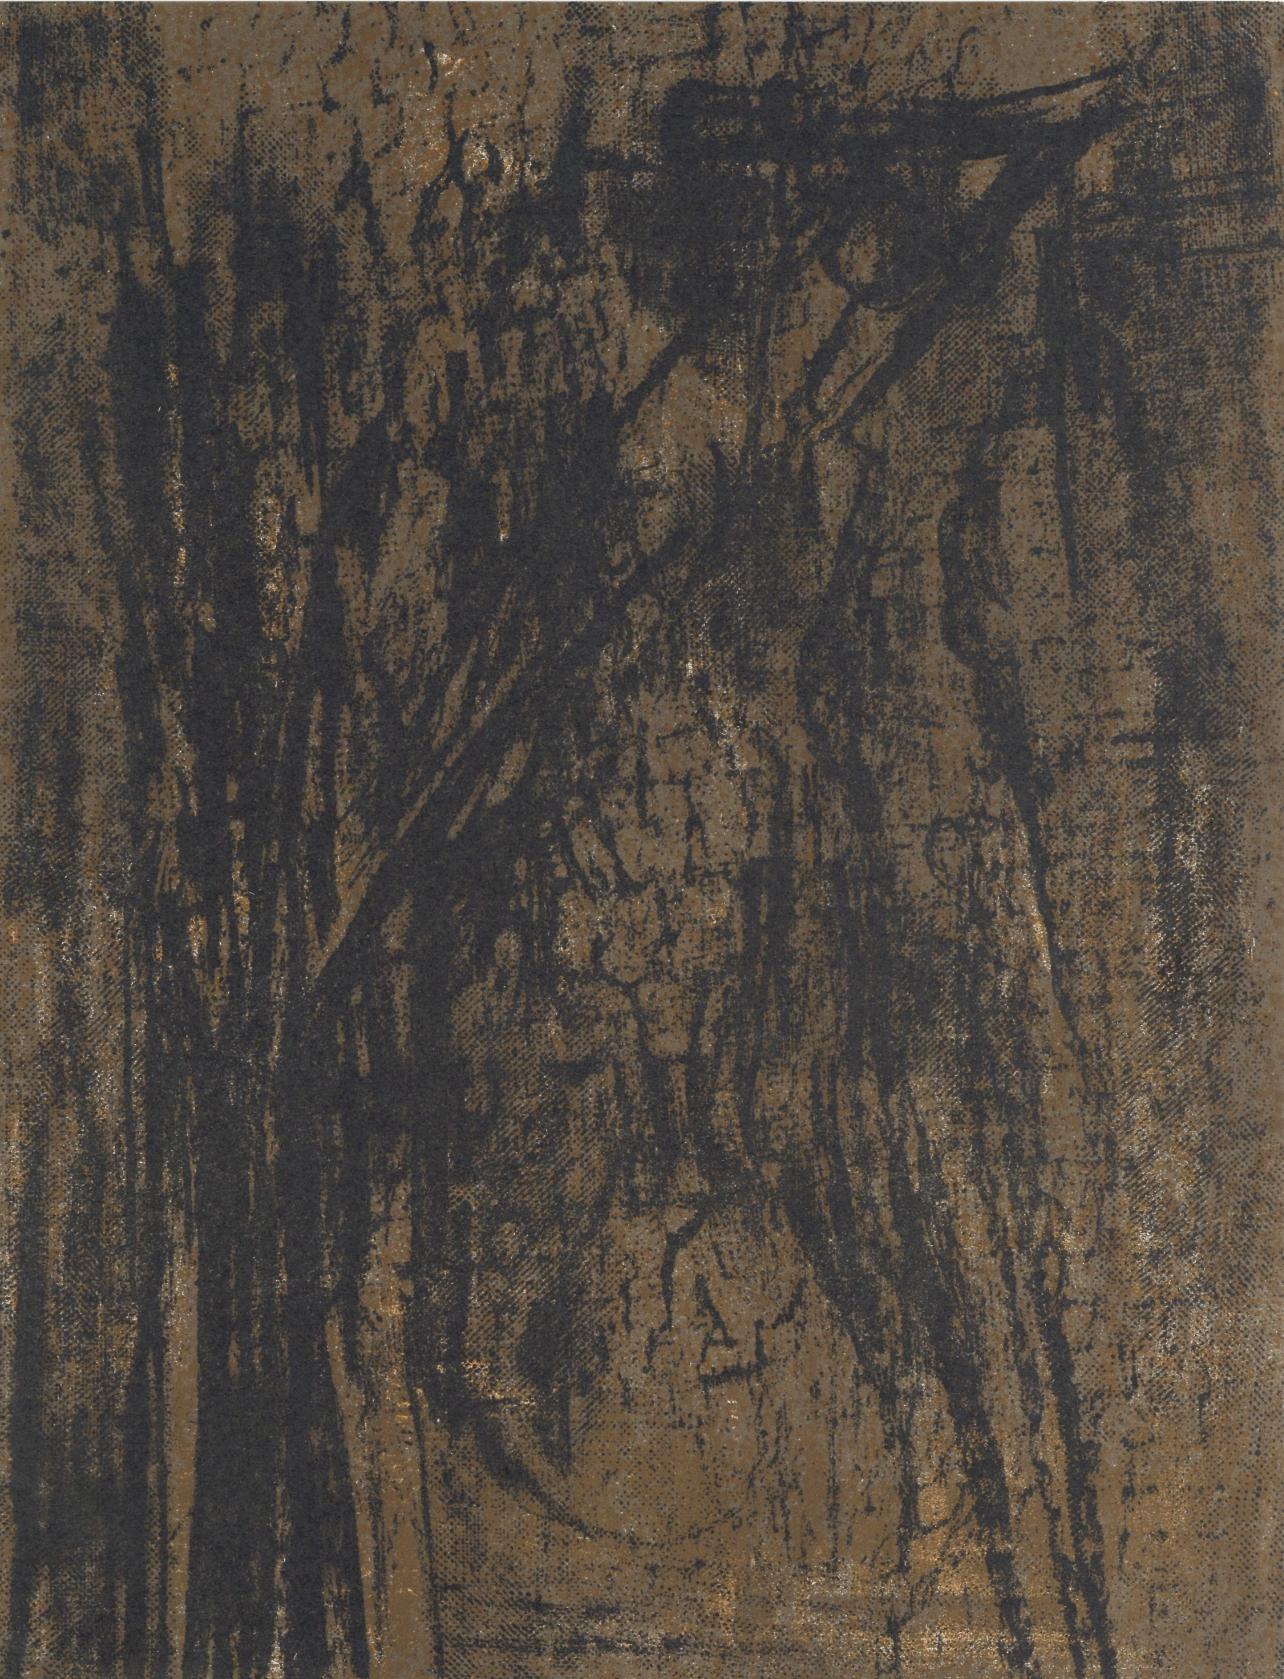 Maria Helena Vieira da Silva Abstract Print - da Silva, Composition, XXe Siècle (after)